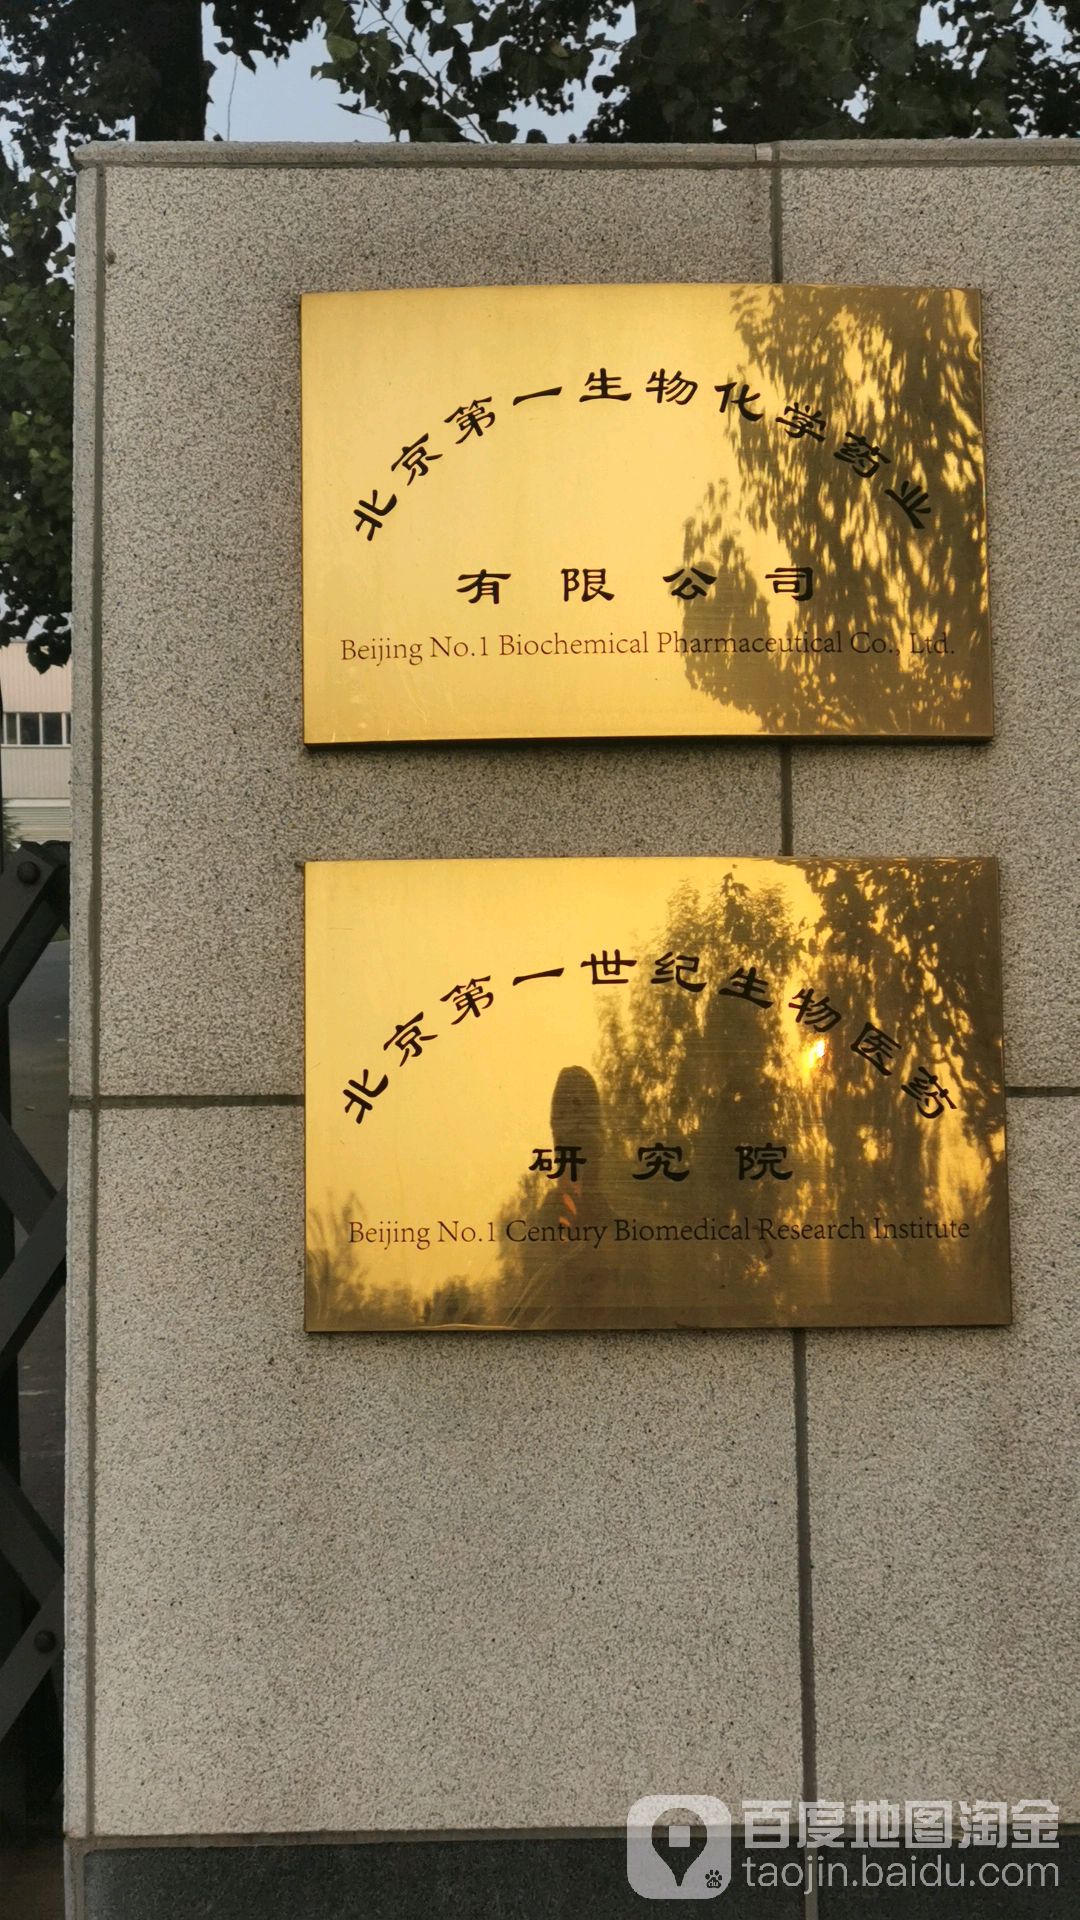 北京第一世紀生物醫藥研究院